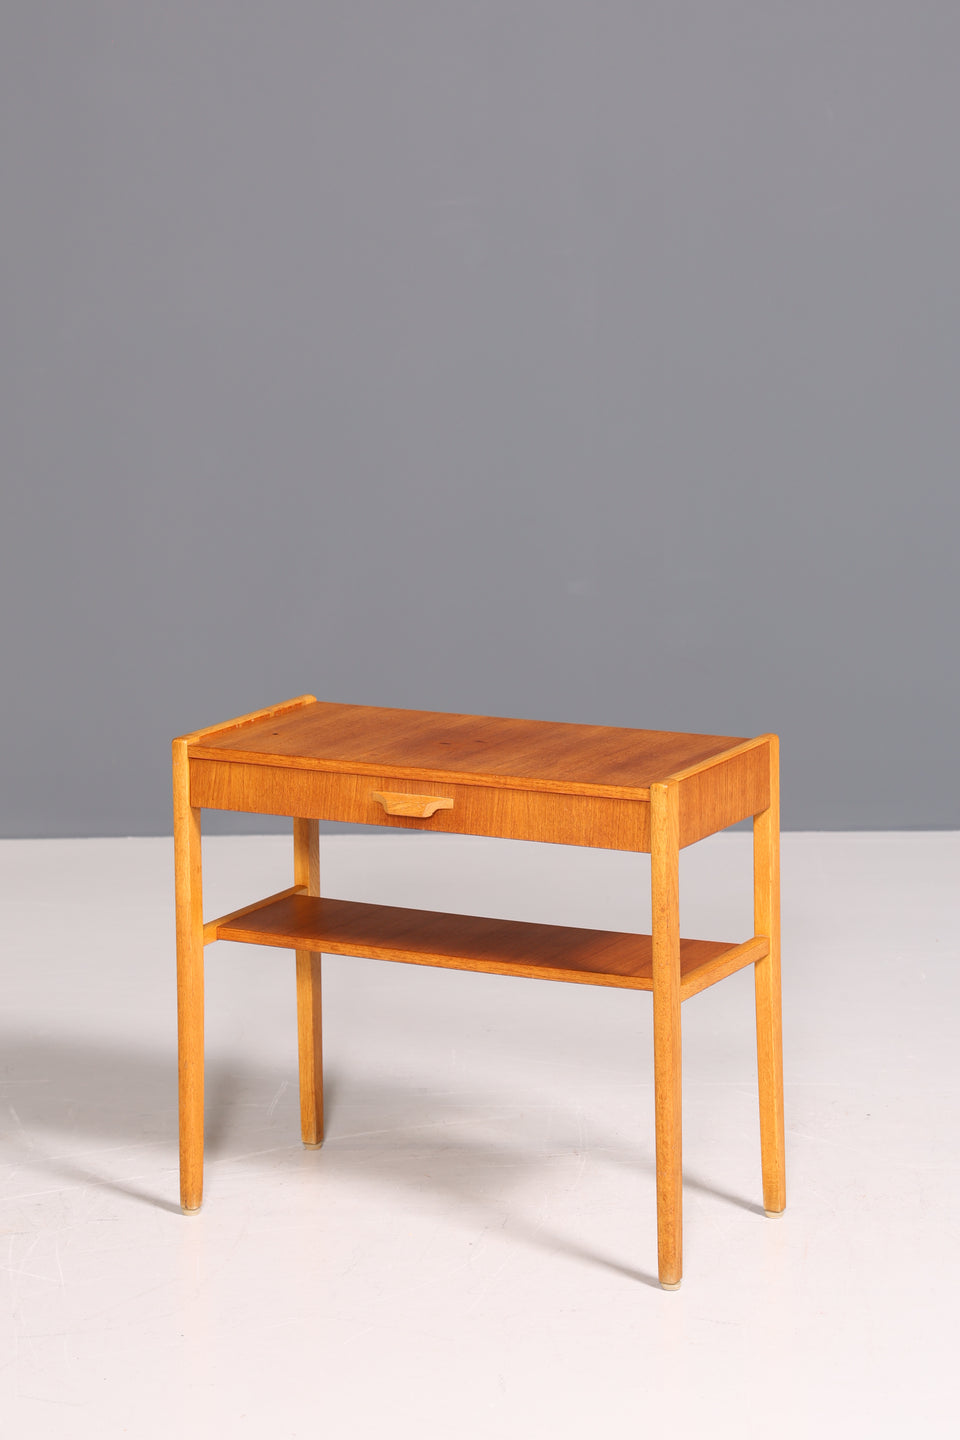 Wunderschöner Mid Century Beistelltisch Danish Design Ablagetisch Teak Tisch 60s